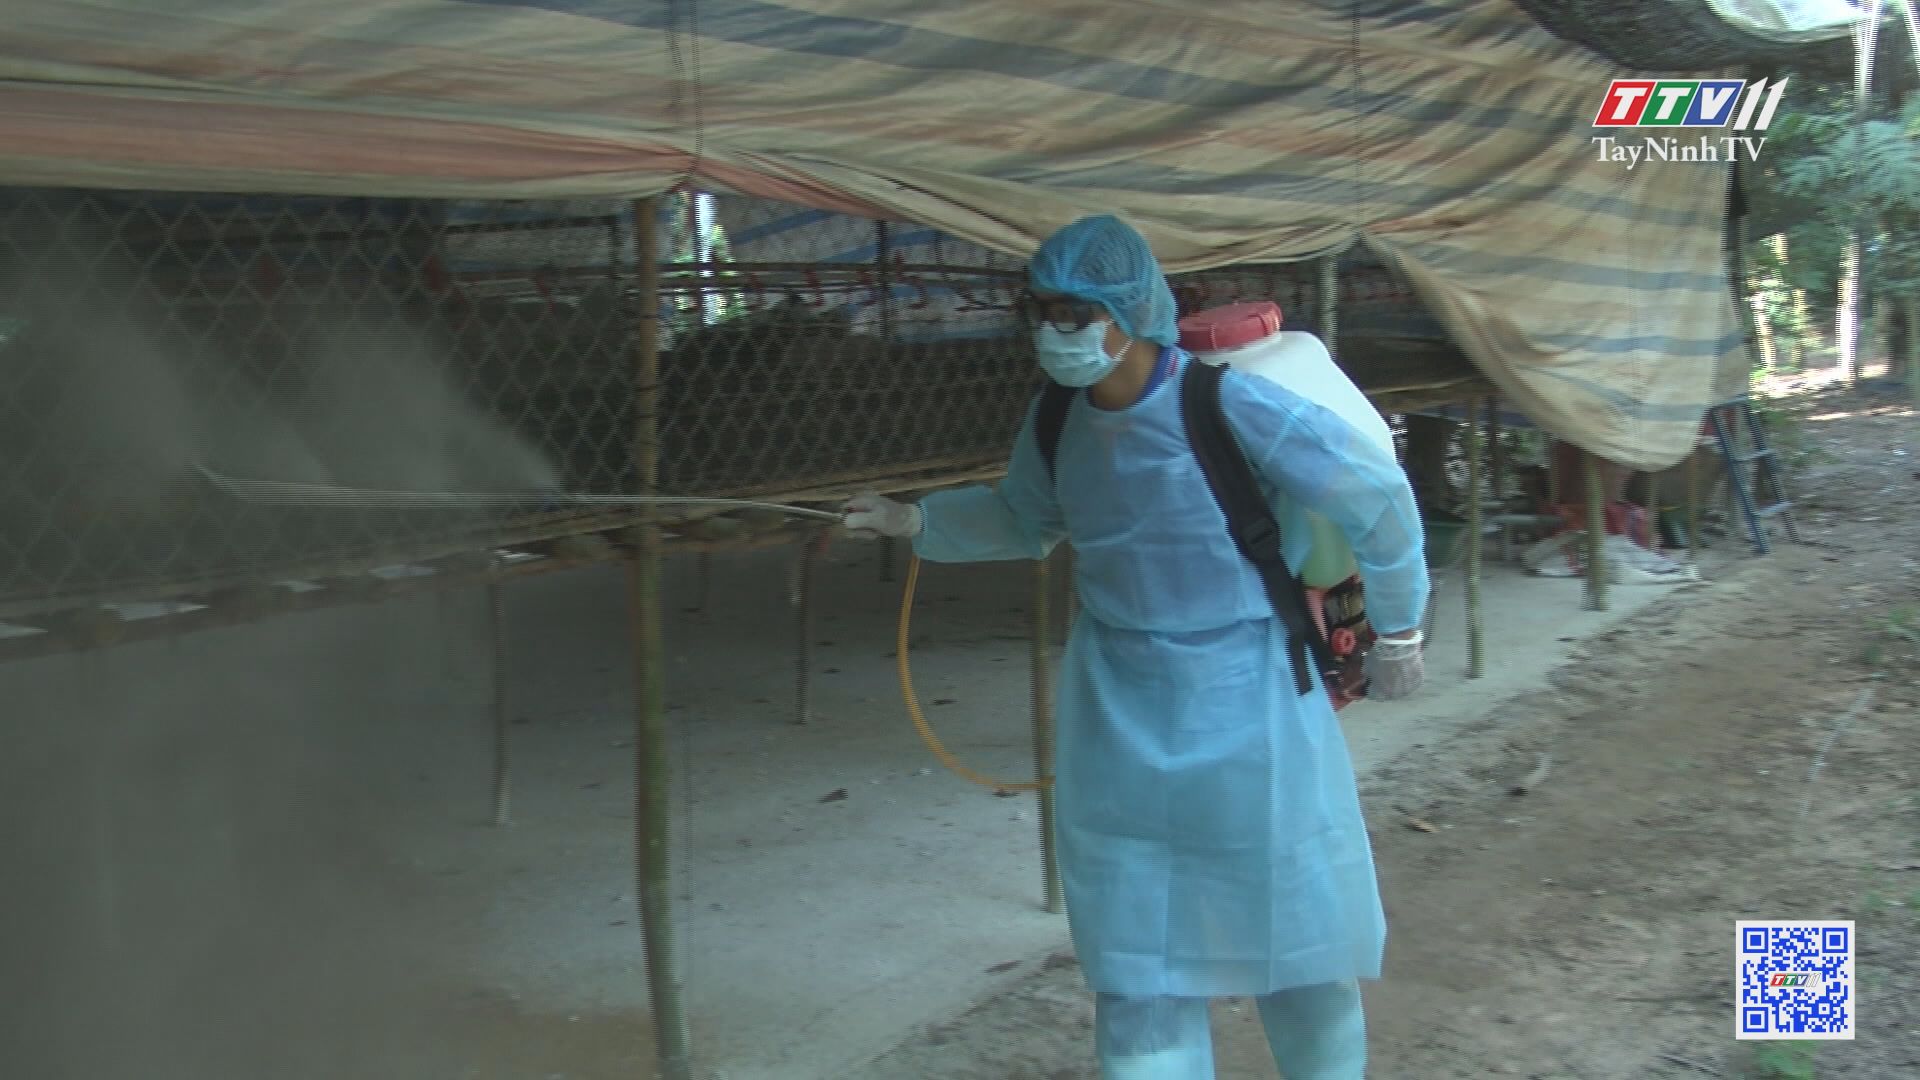 Tây Ninh chú trọng phòng chống dịch cúm gia cầm | NÔNG NGHIỆP TÂY NINH | TayNinhTV